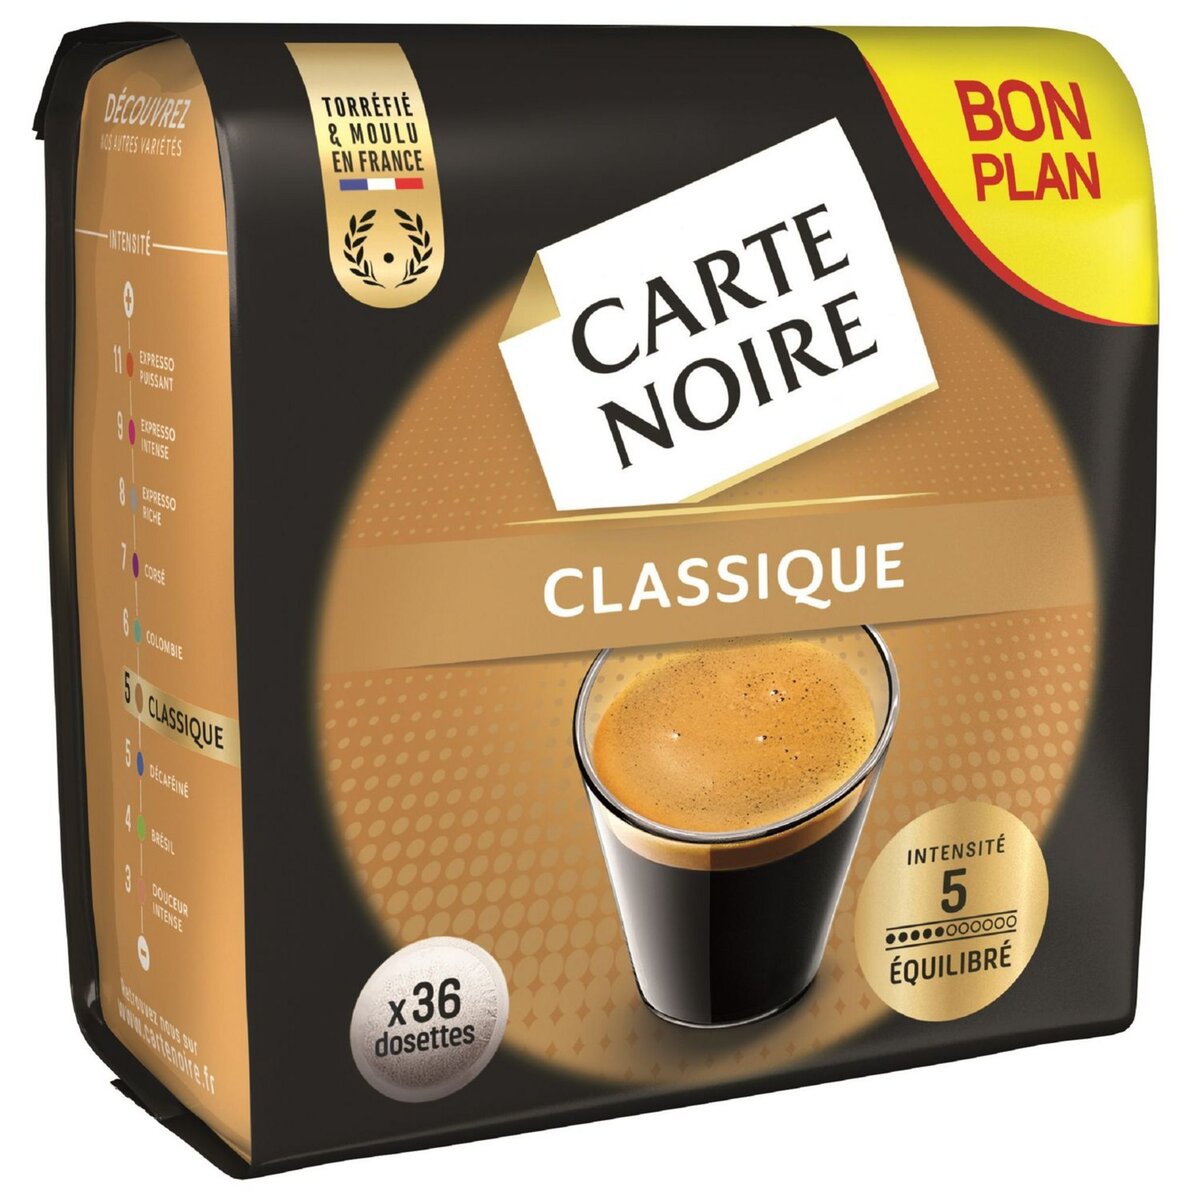 CARTE NOIRE Dosettes de café classique 36 dosettes 250g